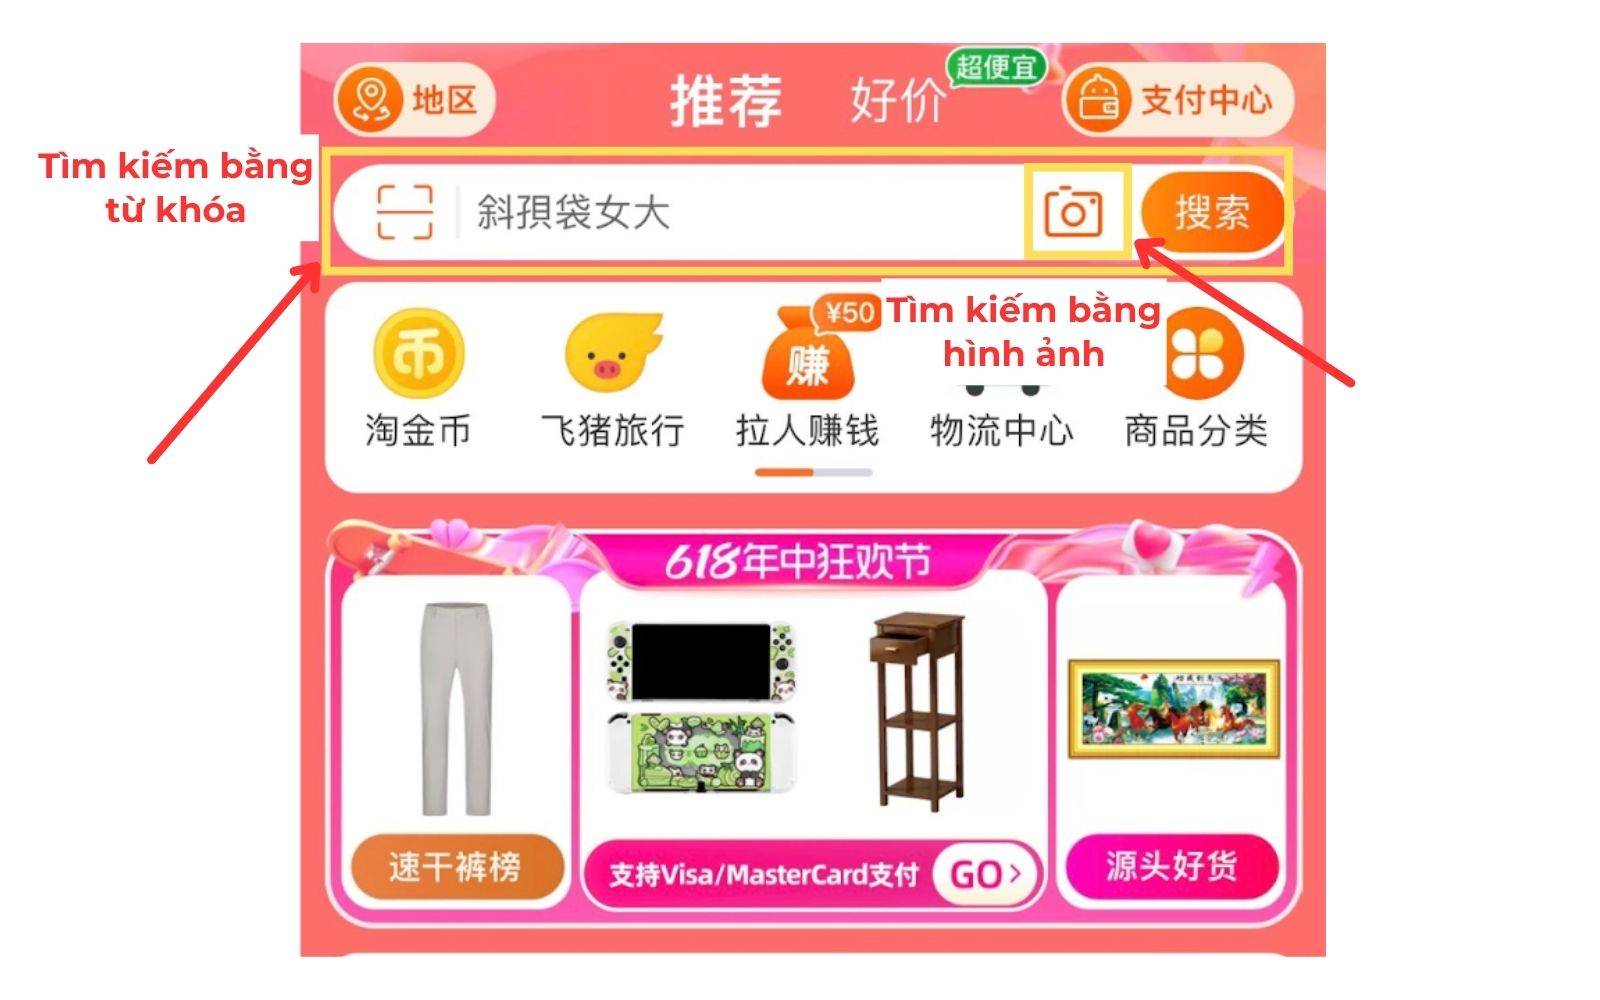 Cách tìm kiếm sản phẩm cần đặt hàng trên Taobao bằng từ khóa và hình ảnh